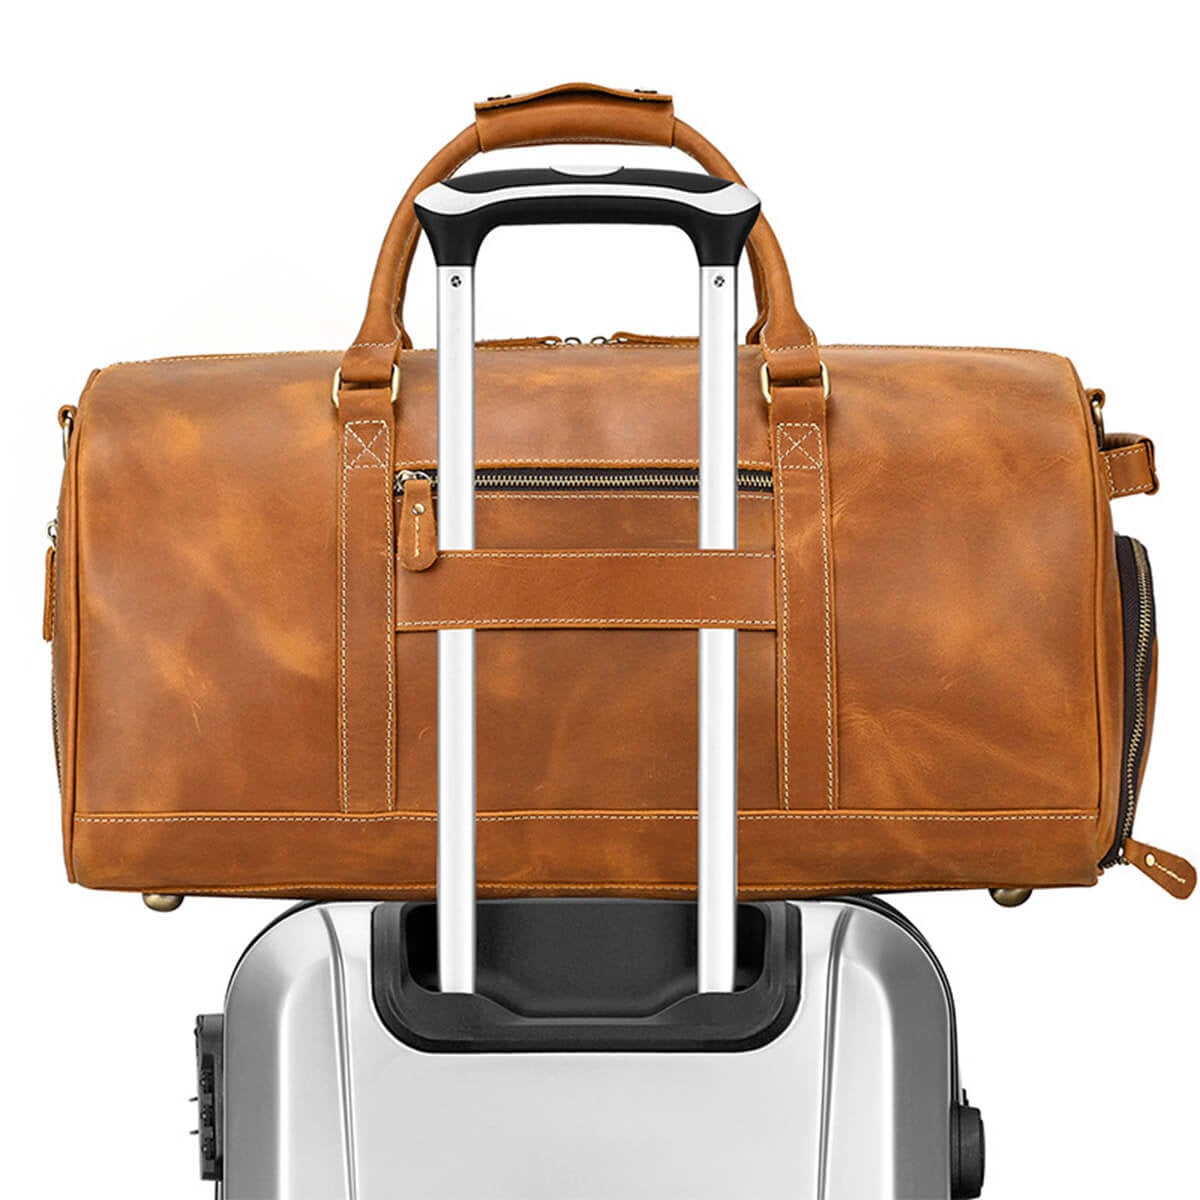 Stylish and Elegant Leather Travel Bag